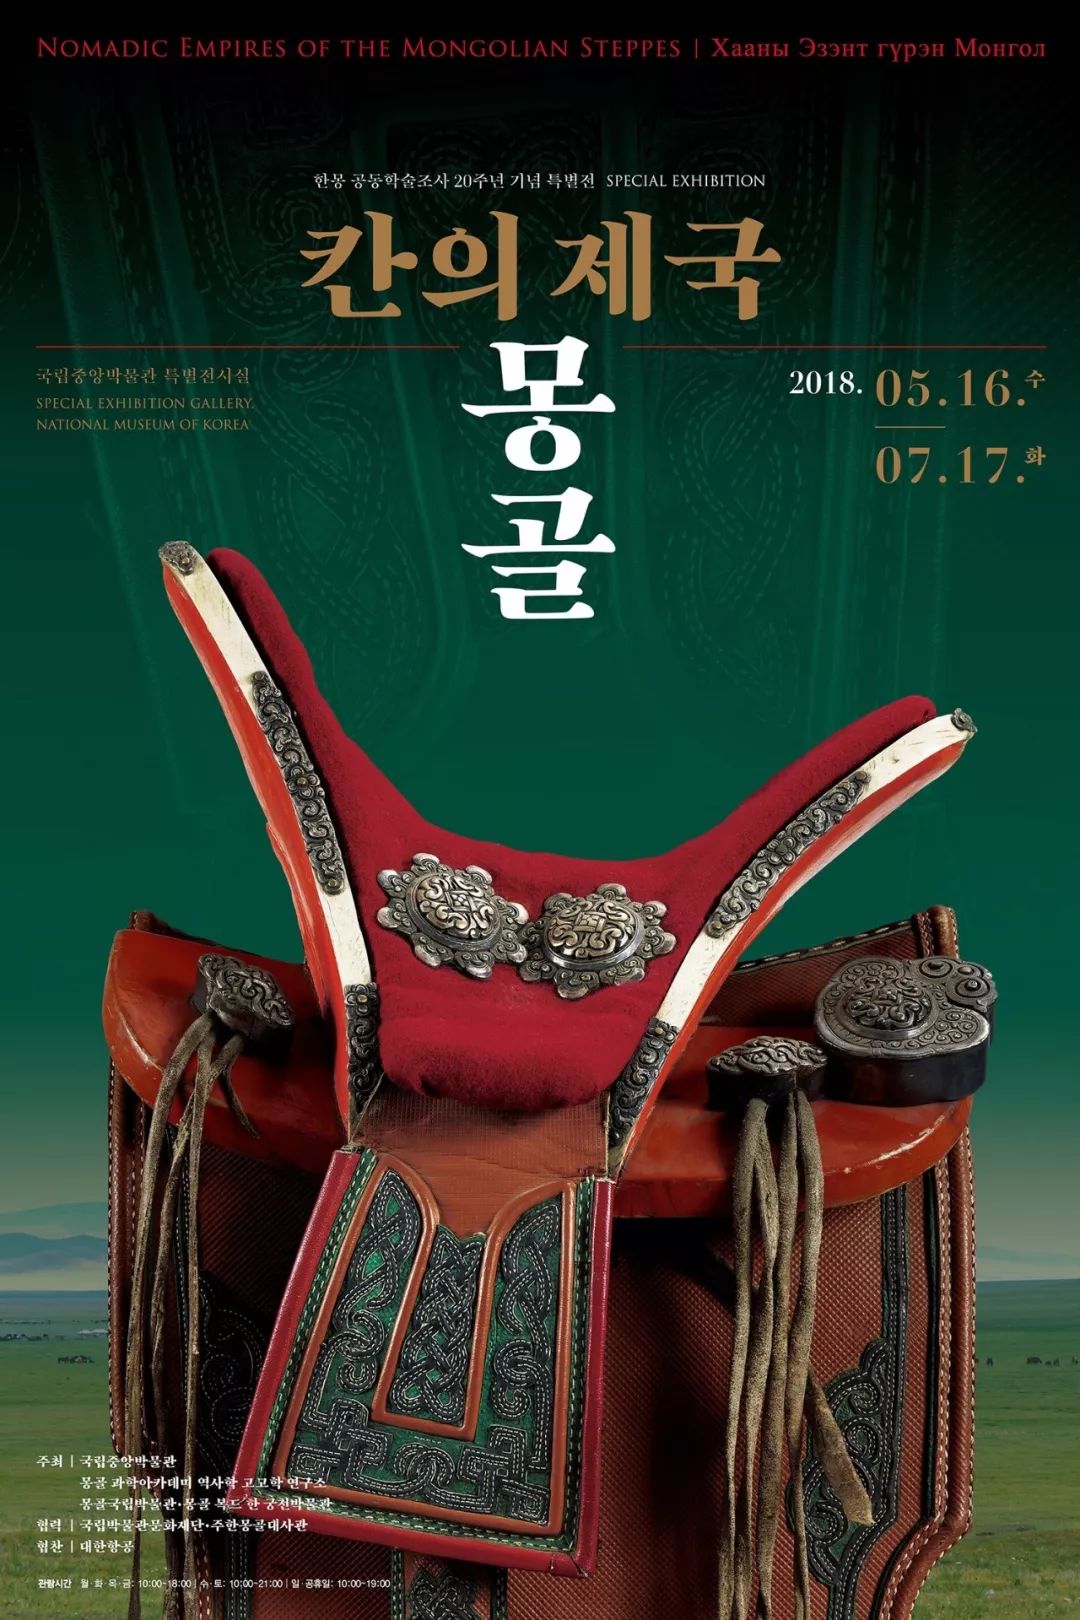 韩国国立博物馆展出了2018“草原帝国-蒙古”展览，将持续到今年7月